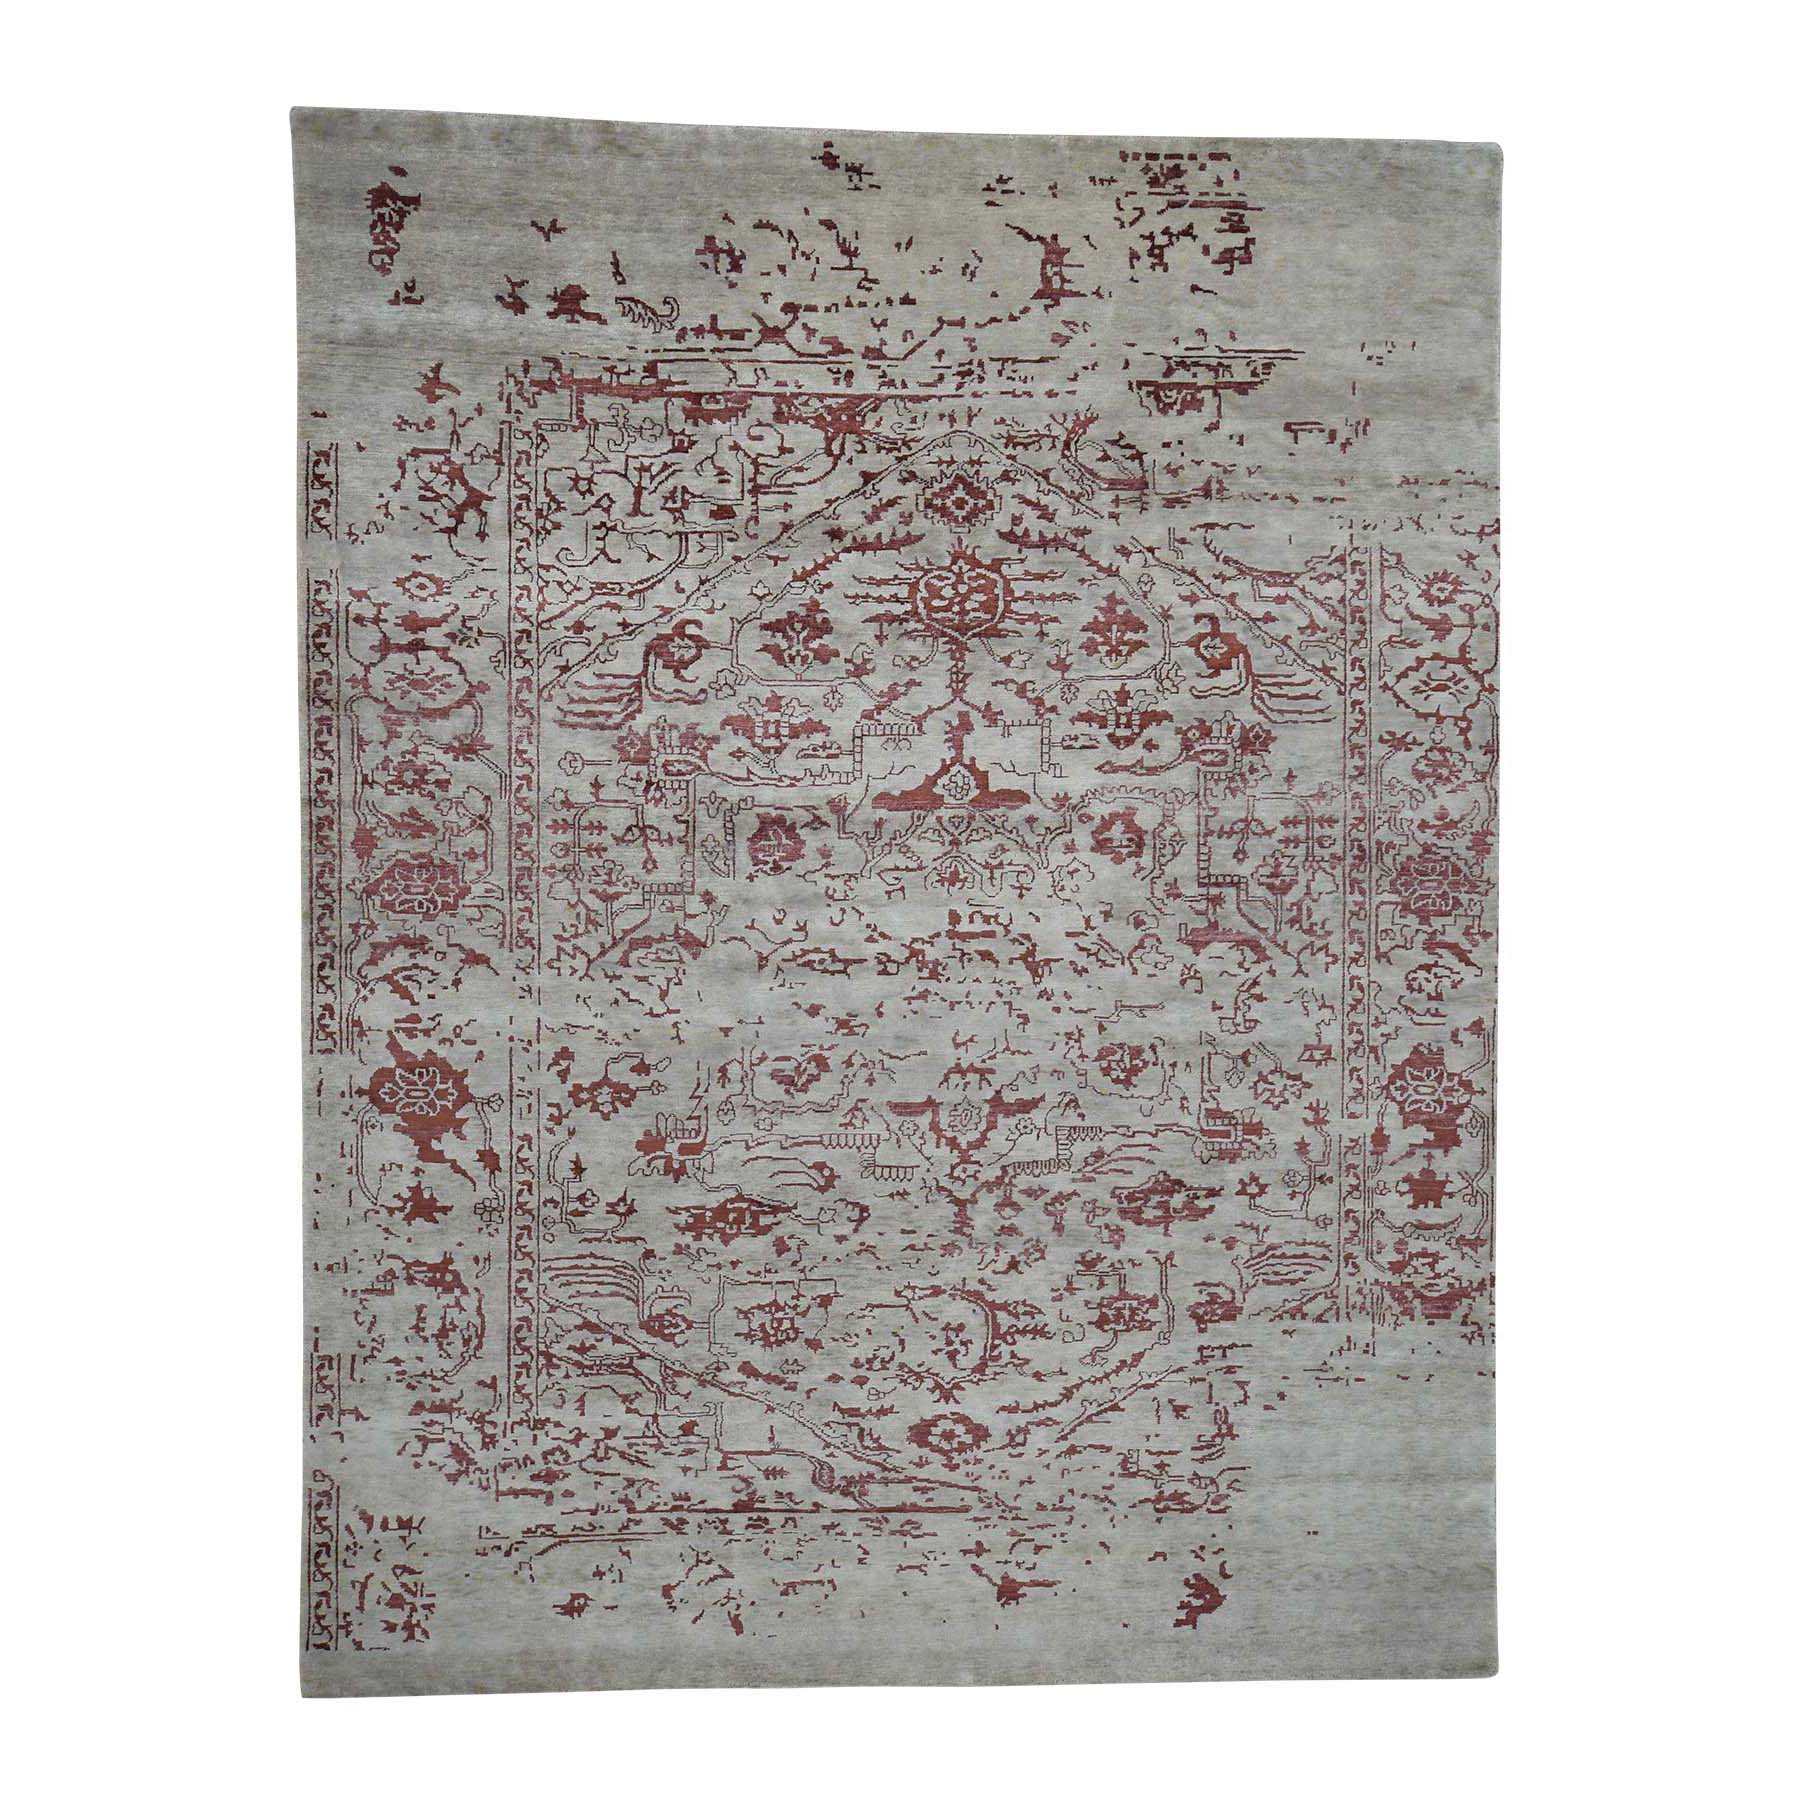 9'x11'9" Broken Design Heriz Wool and Silk Oriental Rug Hand Woven 